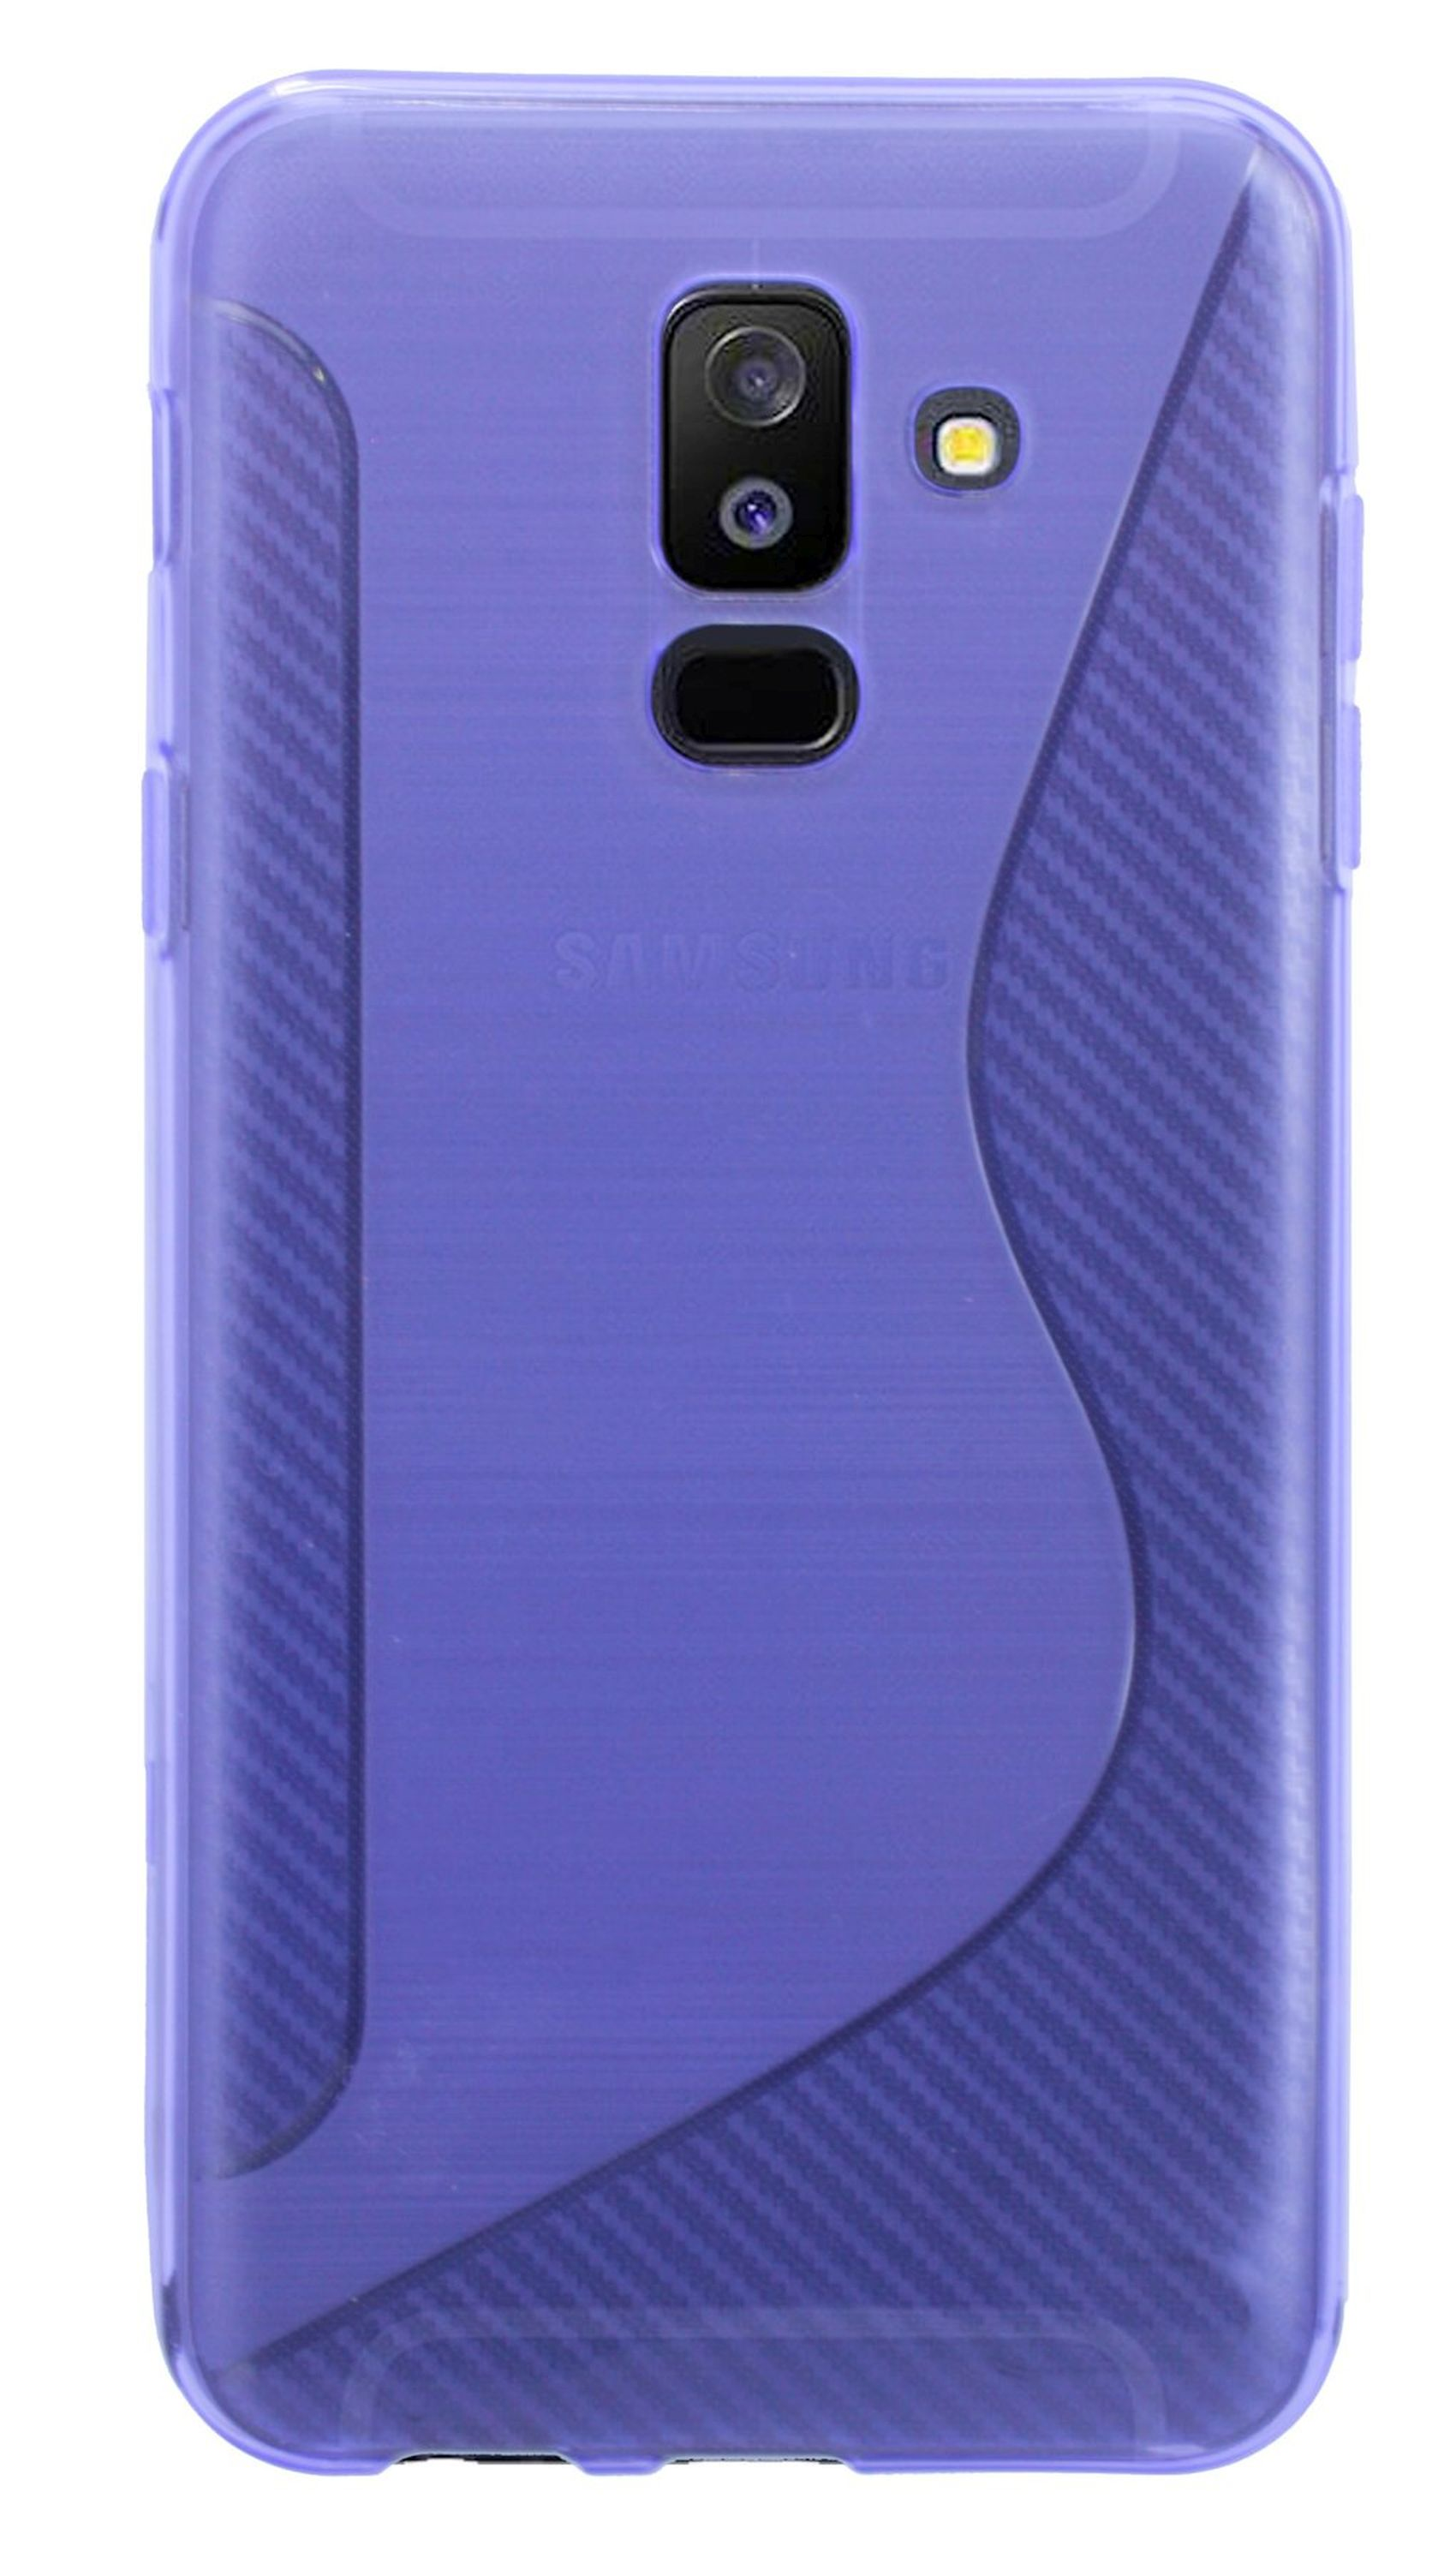 COFI S-Line Galaxy Plus, Violett Cover, Bumper, A6 Samsung